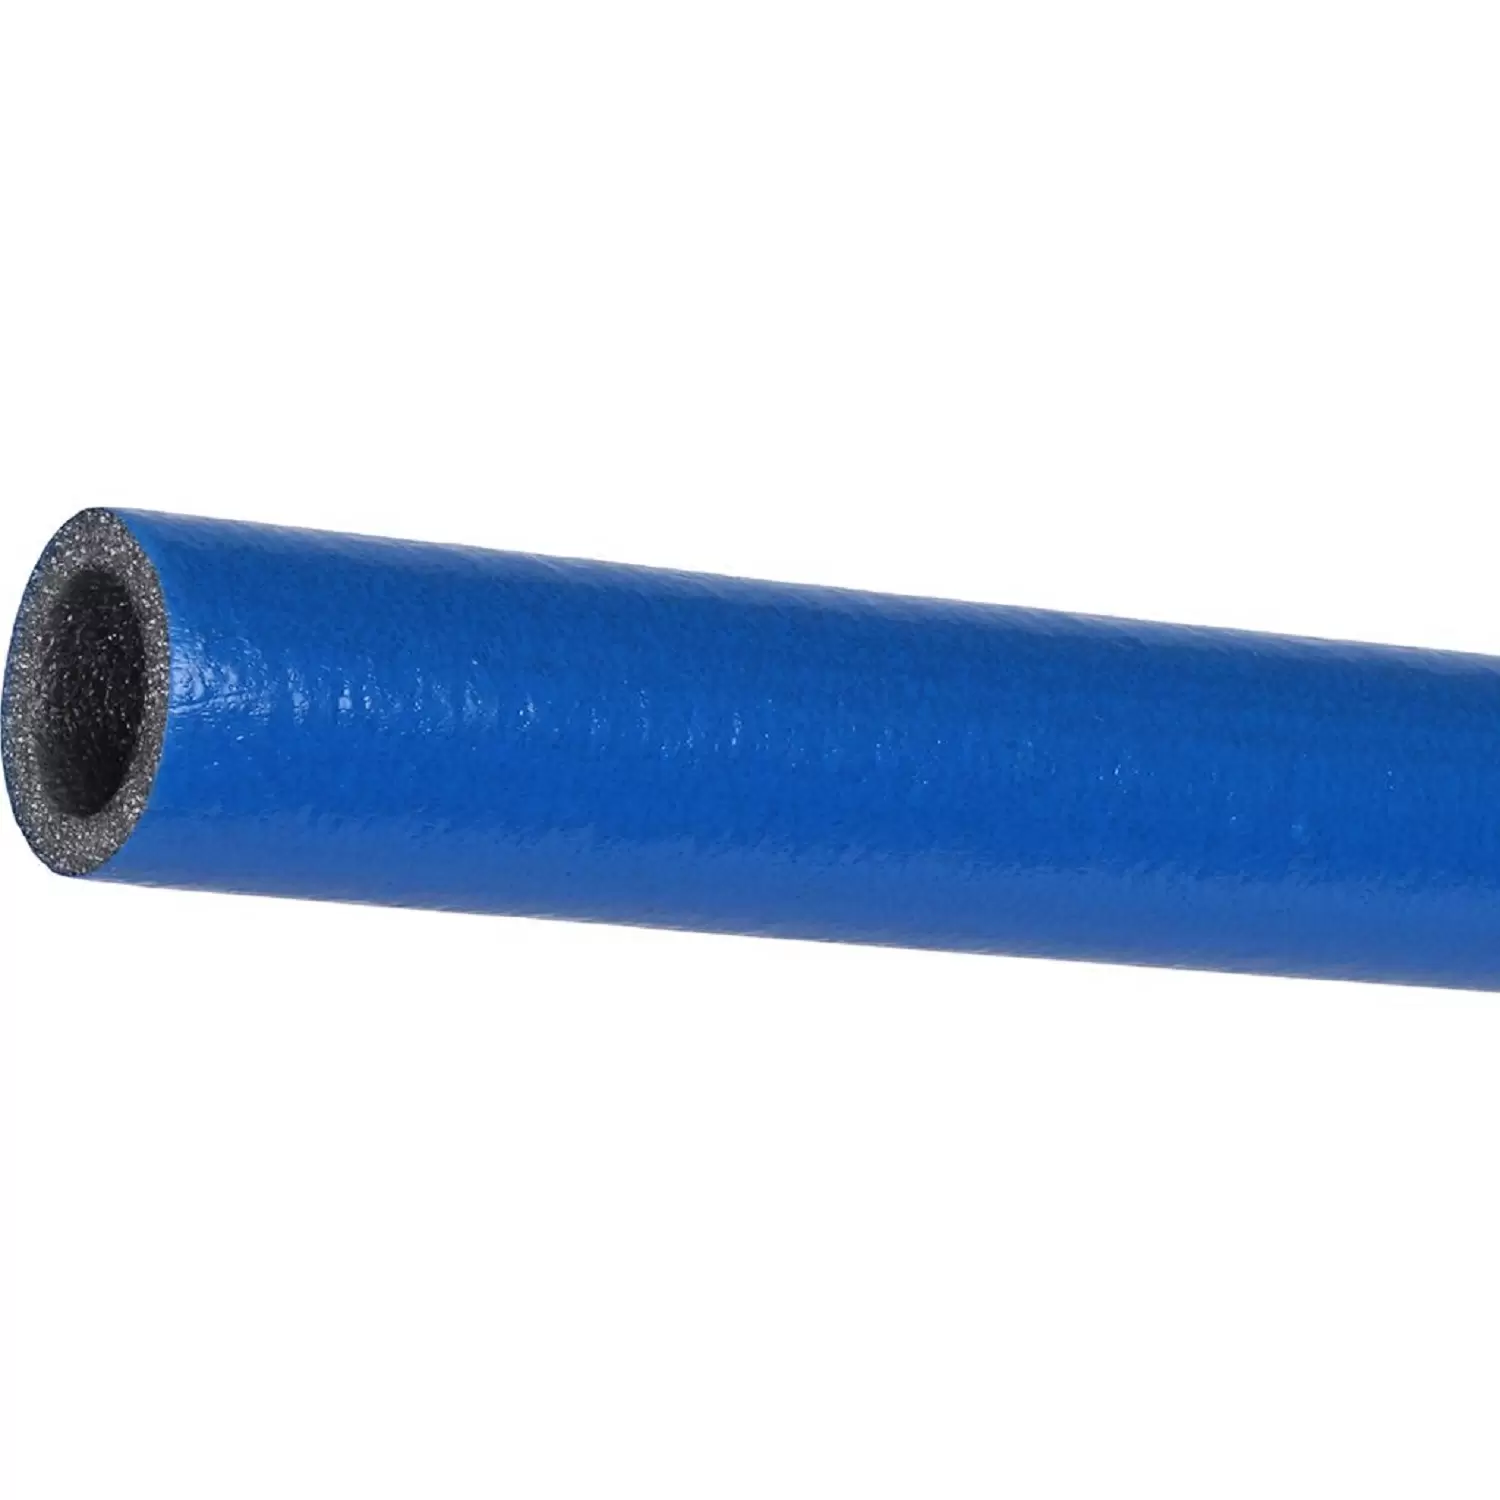 Теплоизоляция Энергофлекс супер протект 28/6 для труб диаметром 25 мм синяя, трубка 2 м